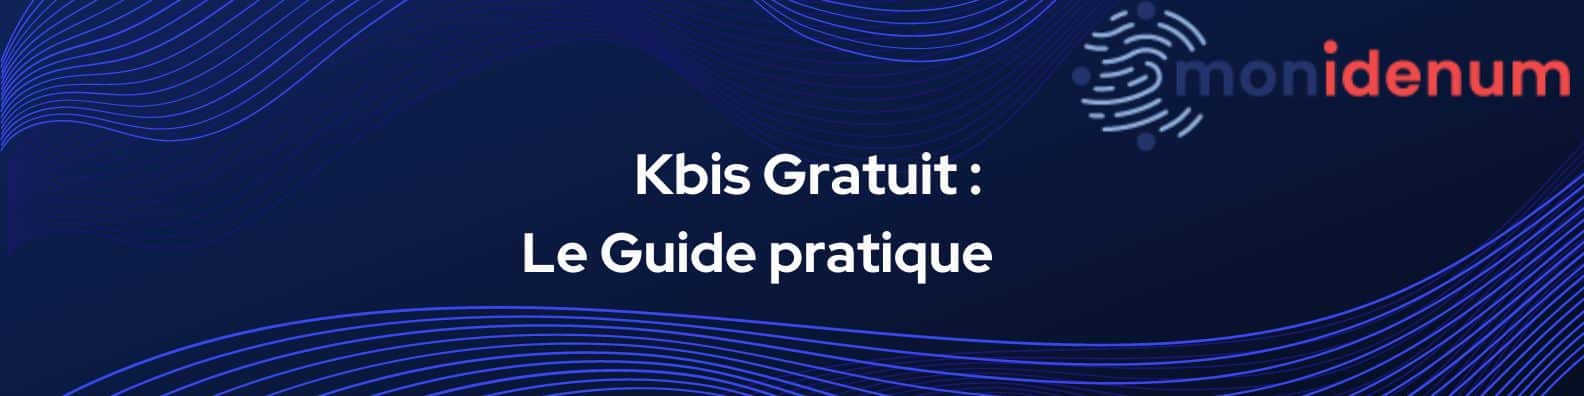 Article 1 Décrochez votre Kbis sans frais. Guide pratique-7